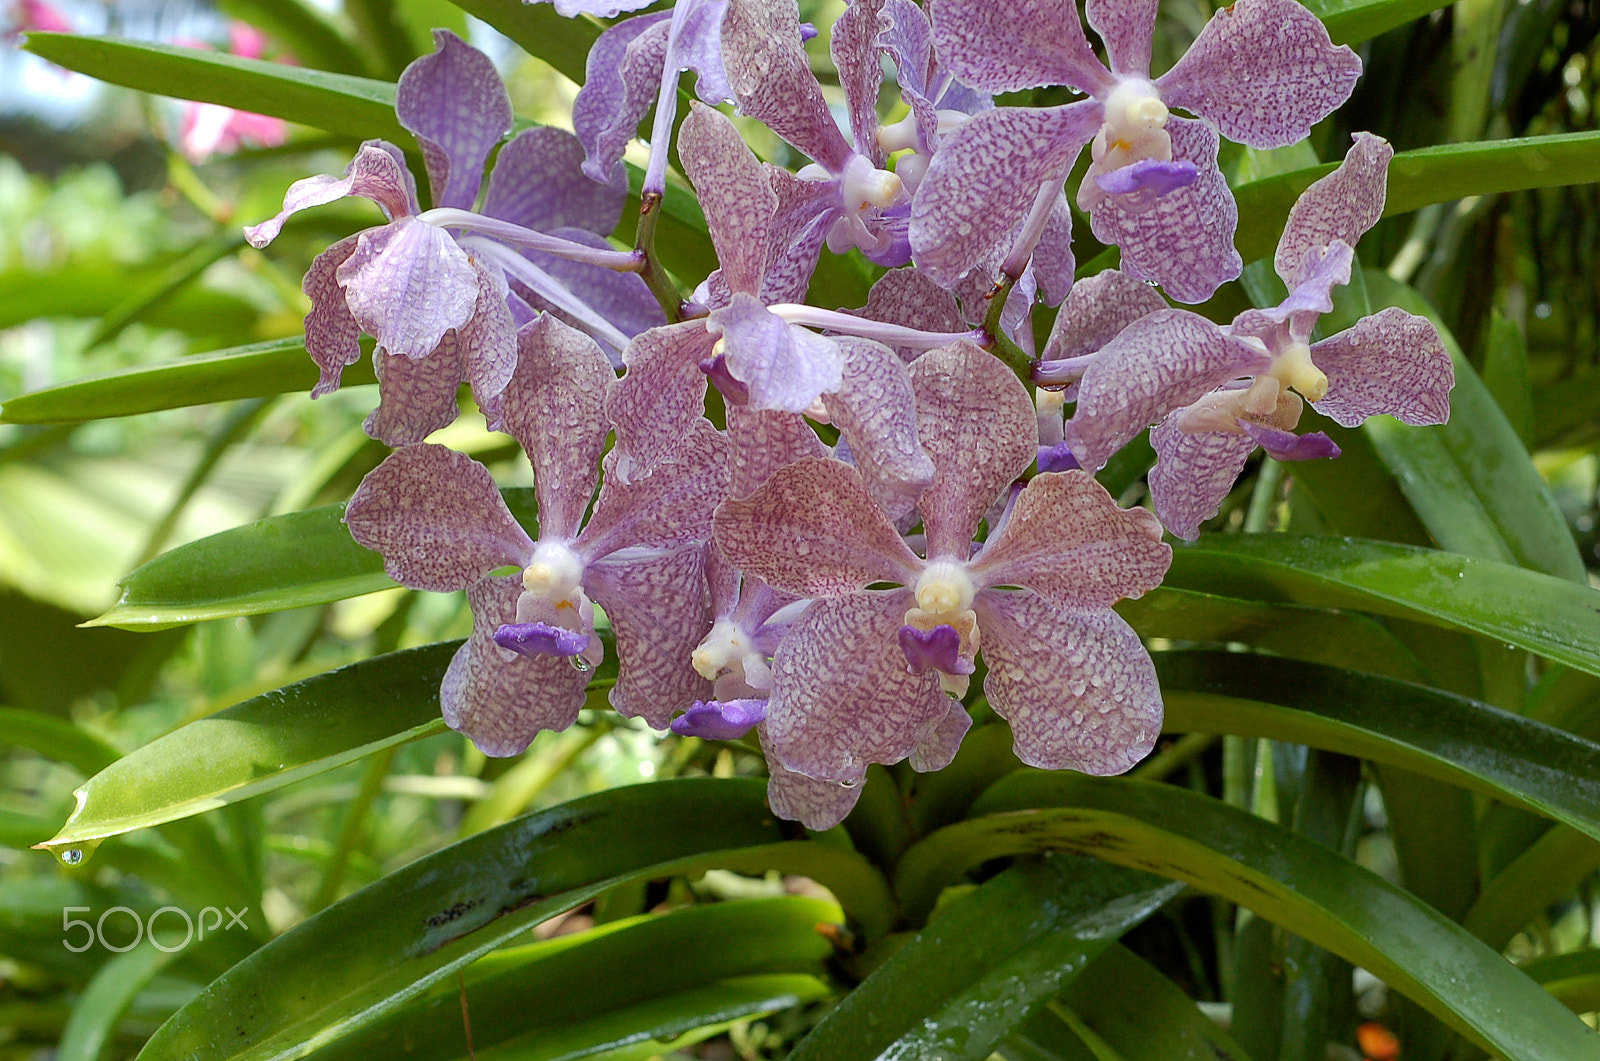 Nikon D50 + Nikon AF Nikkor 50mm F1.8D sample photo. Orchids photography